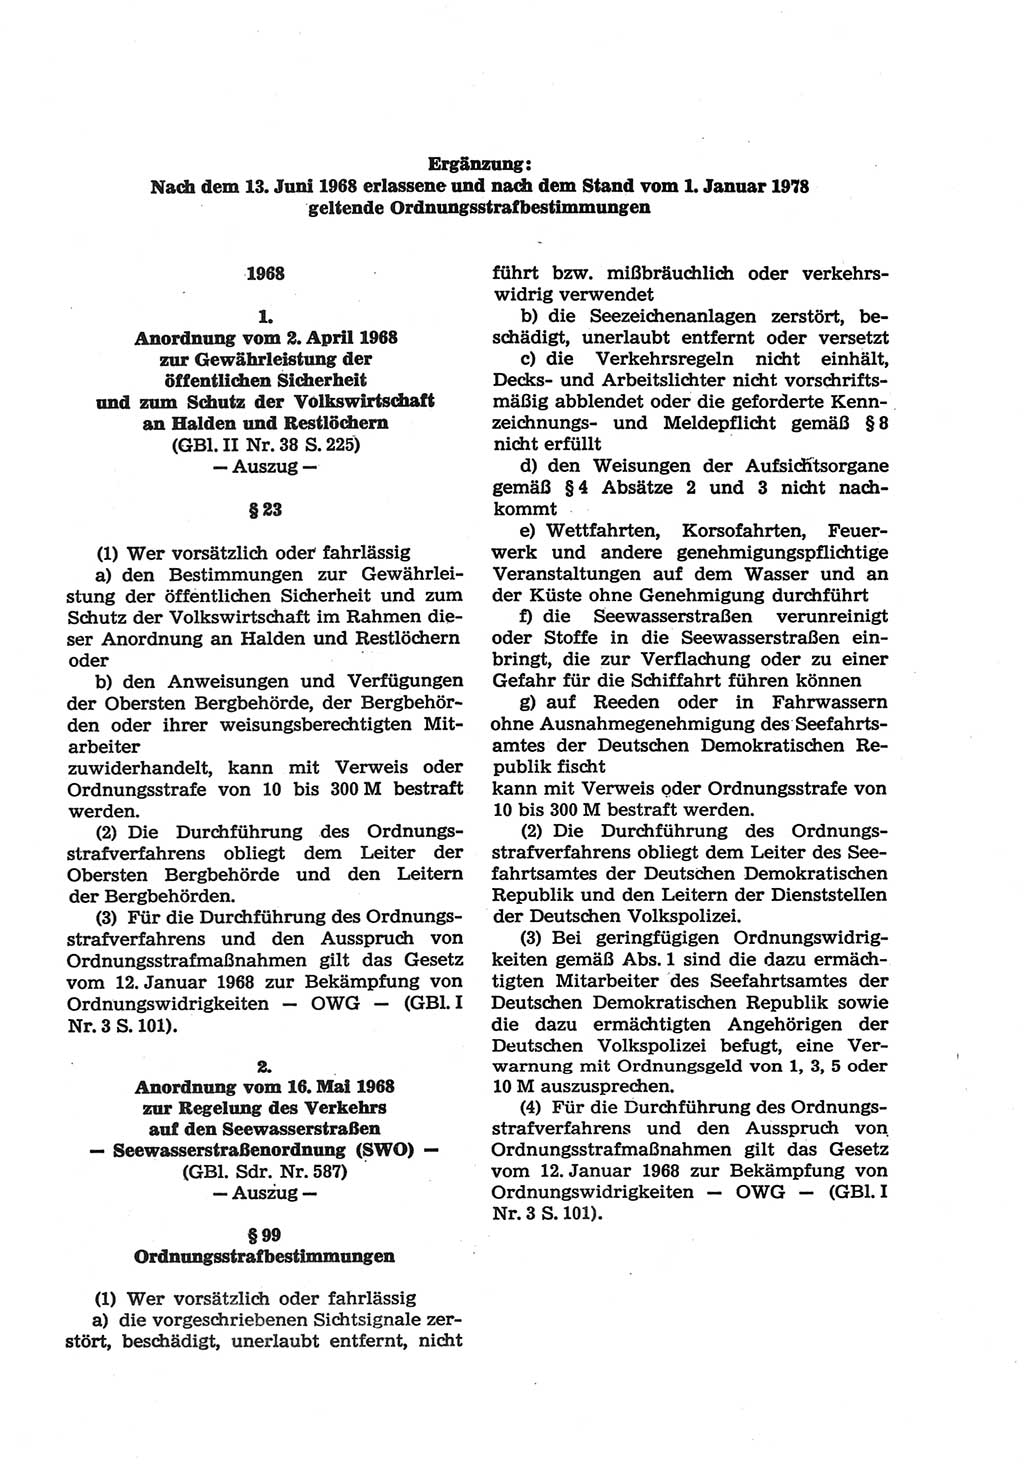 Strafgesetzbuch (StGB) der Deutschen Demokratischen Republik (DDR) und angrenzende Gesetze und Bestimmungen 1977, Seite 157 (StGB DDR Ges. Best. 1977, S. 157)